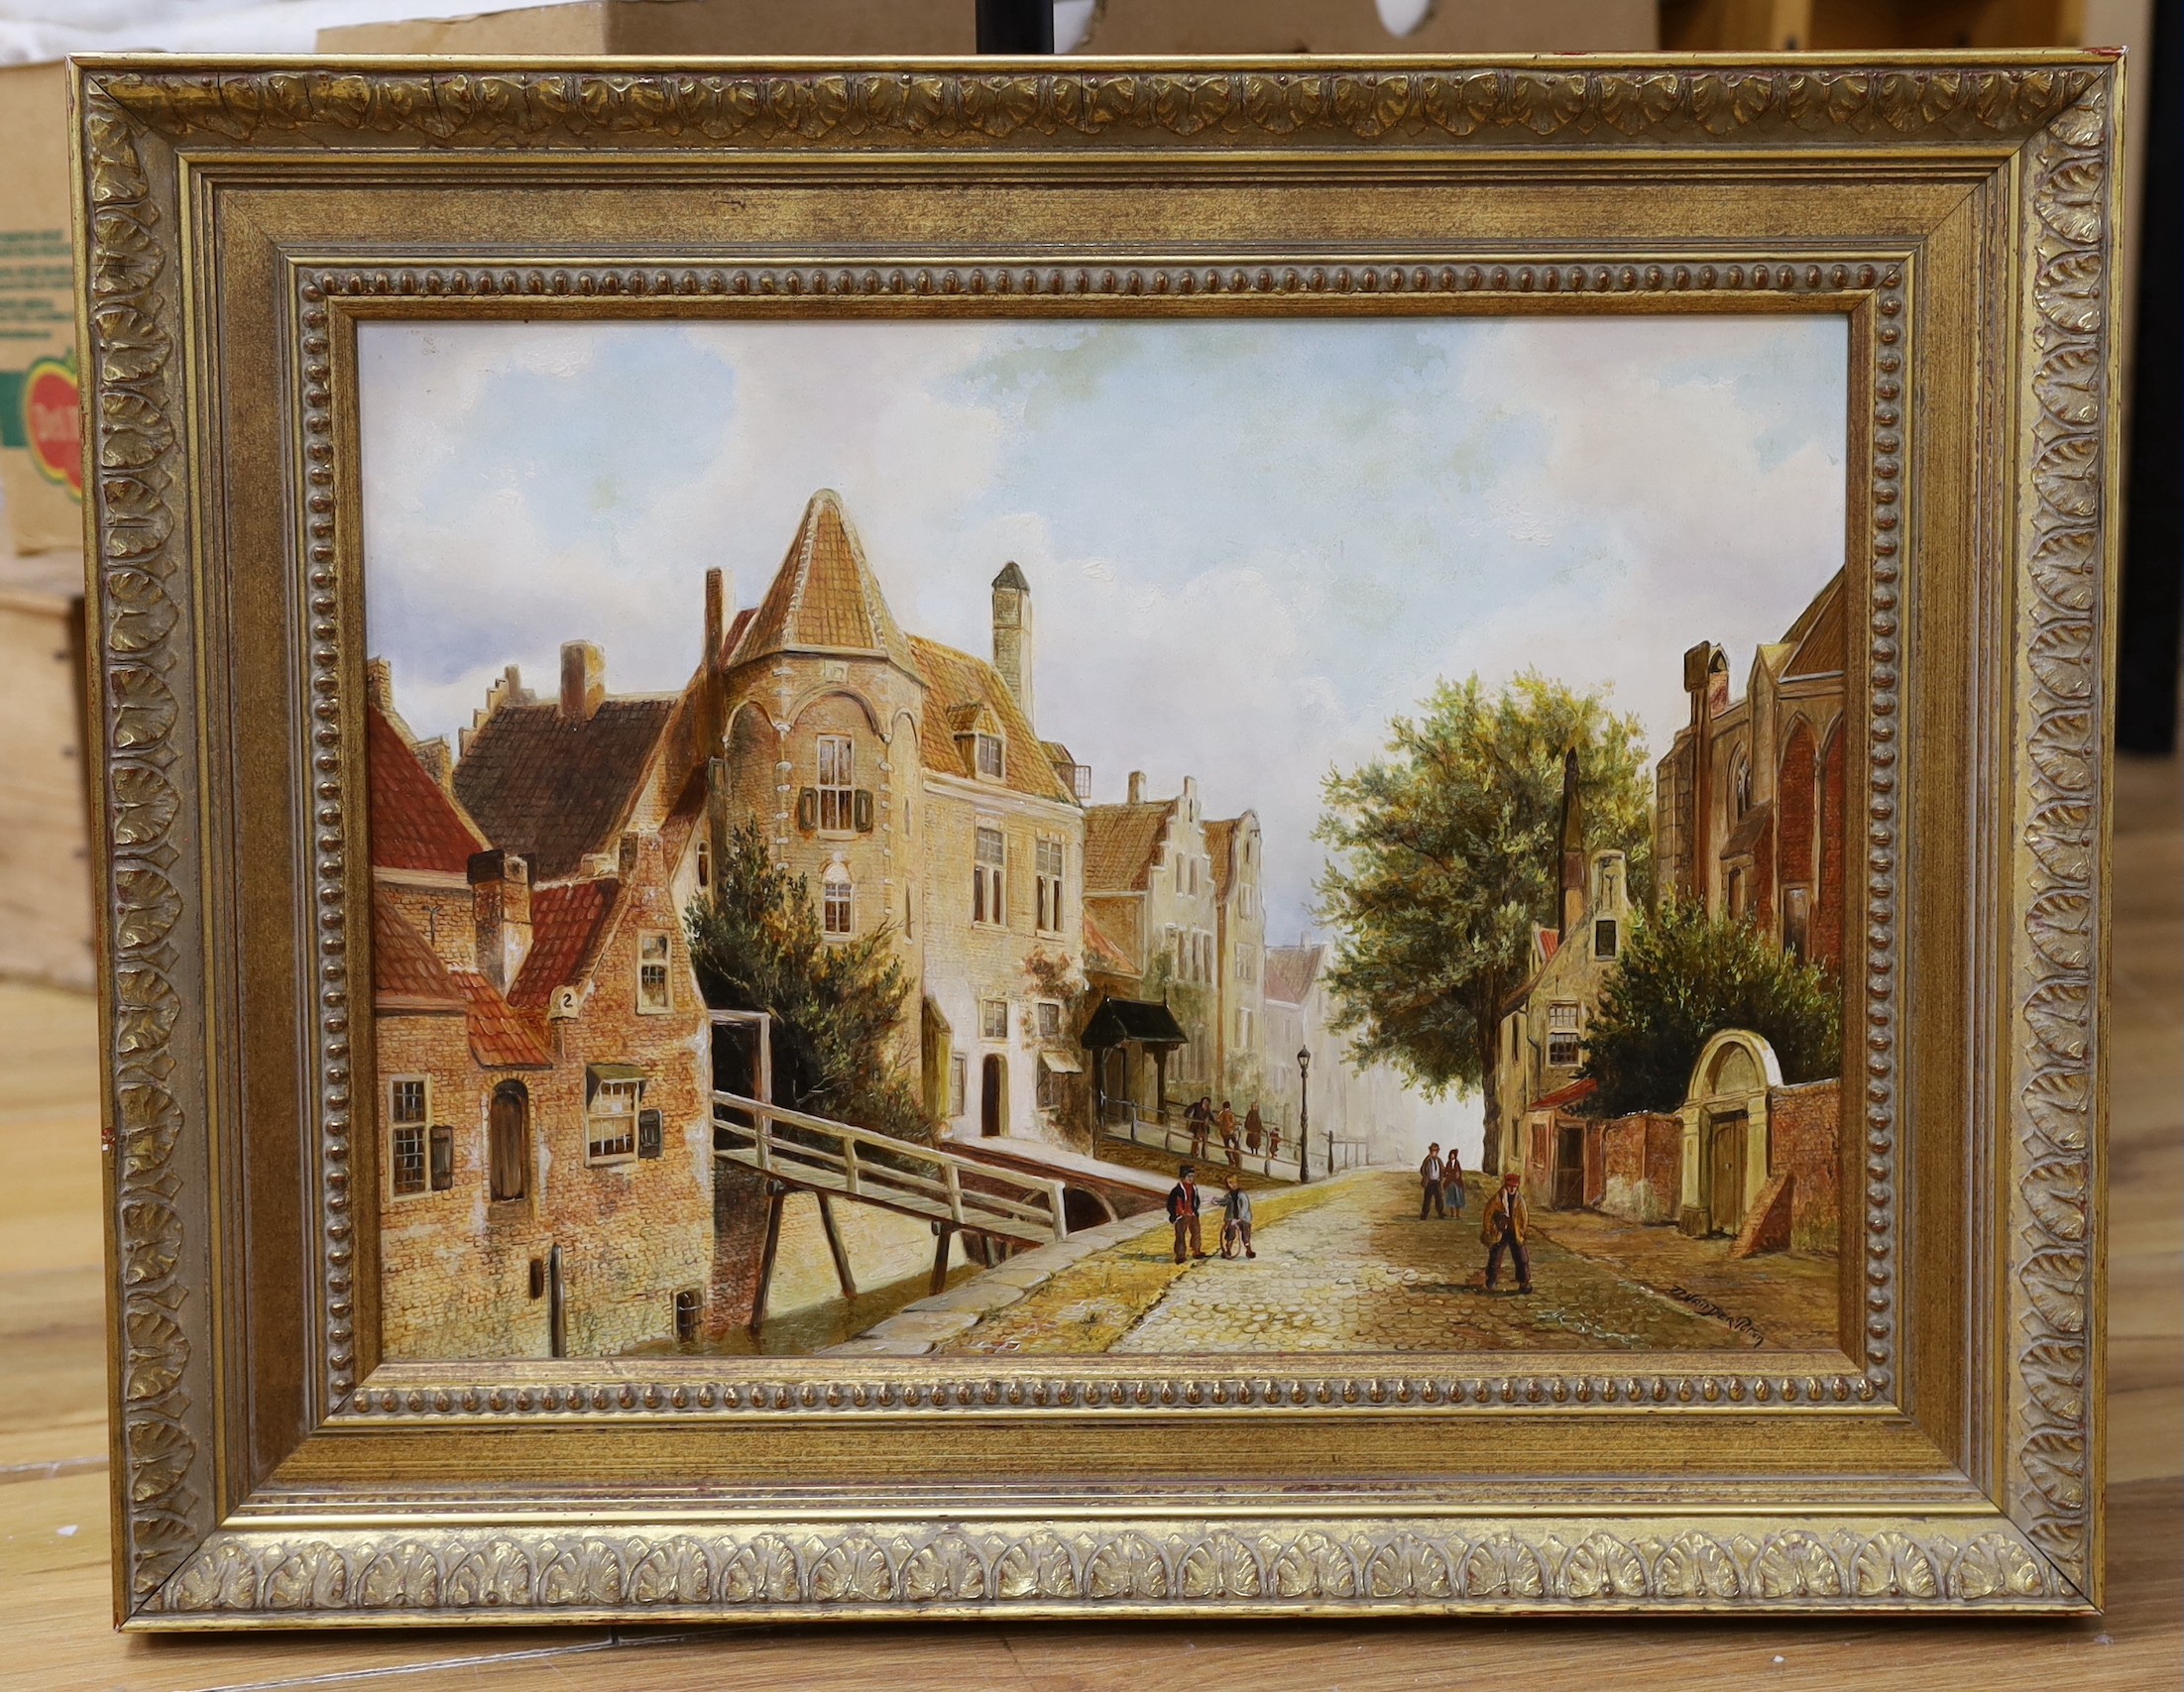 Daniel Van der Putten (1949-), oil on board, Dutch street scene, signed, 31 x 44cm